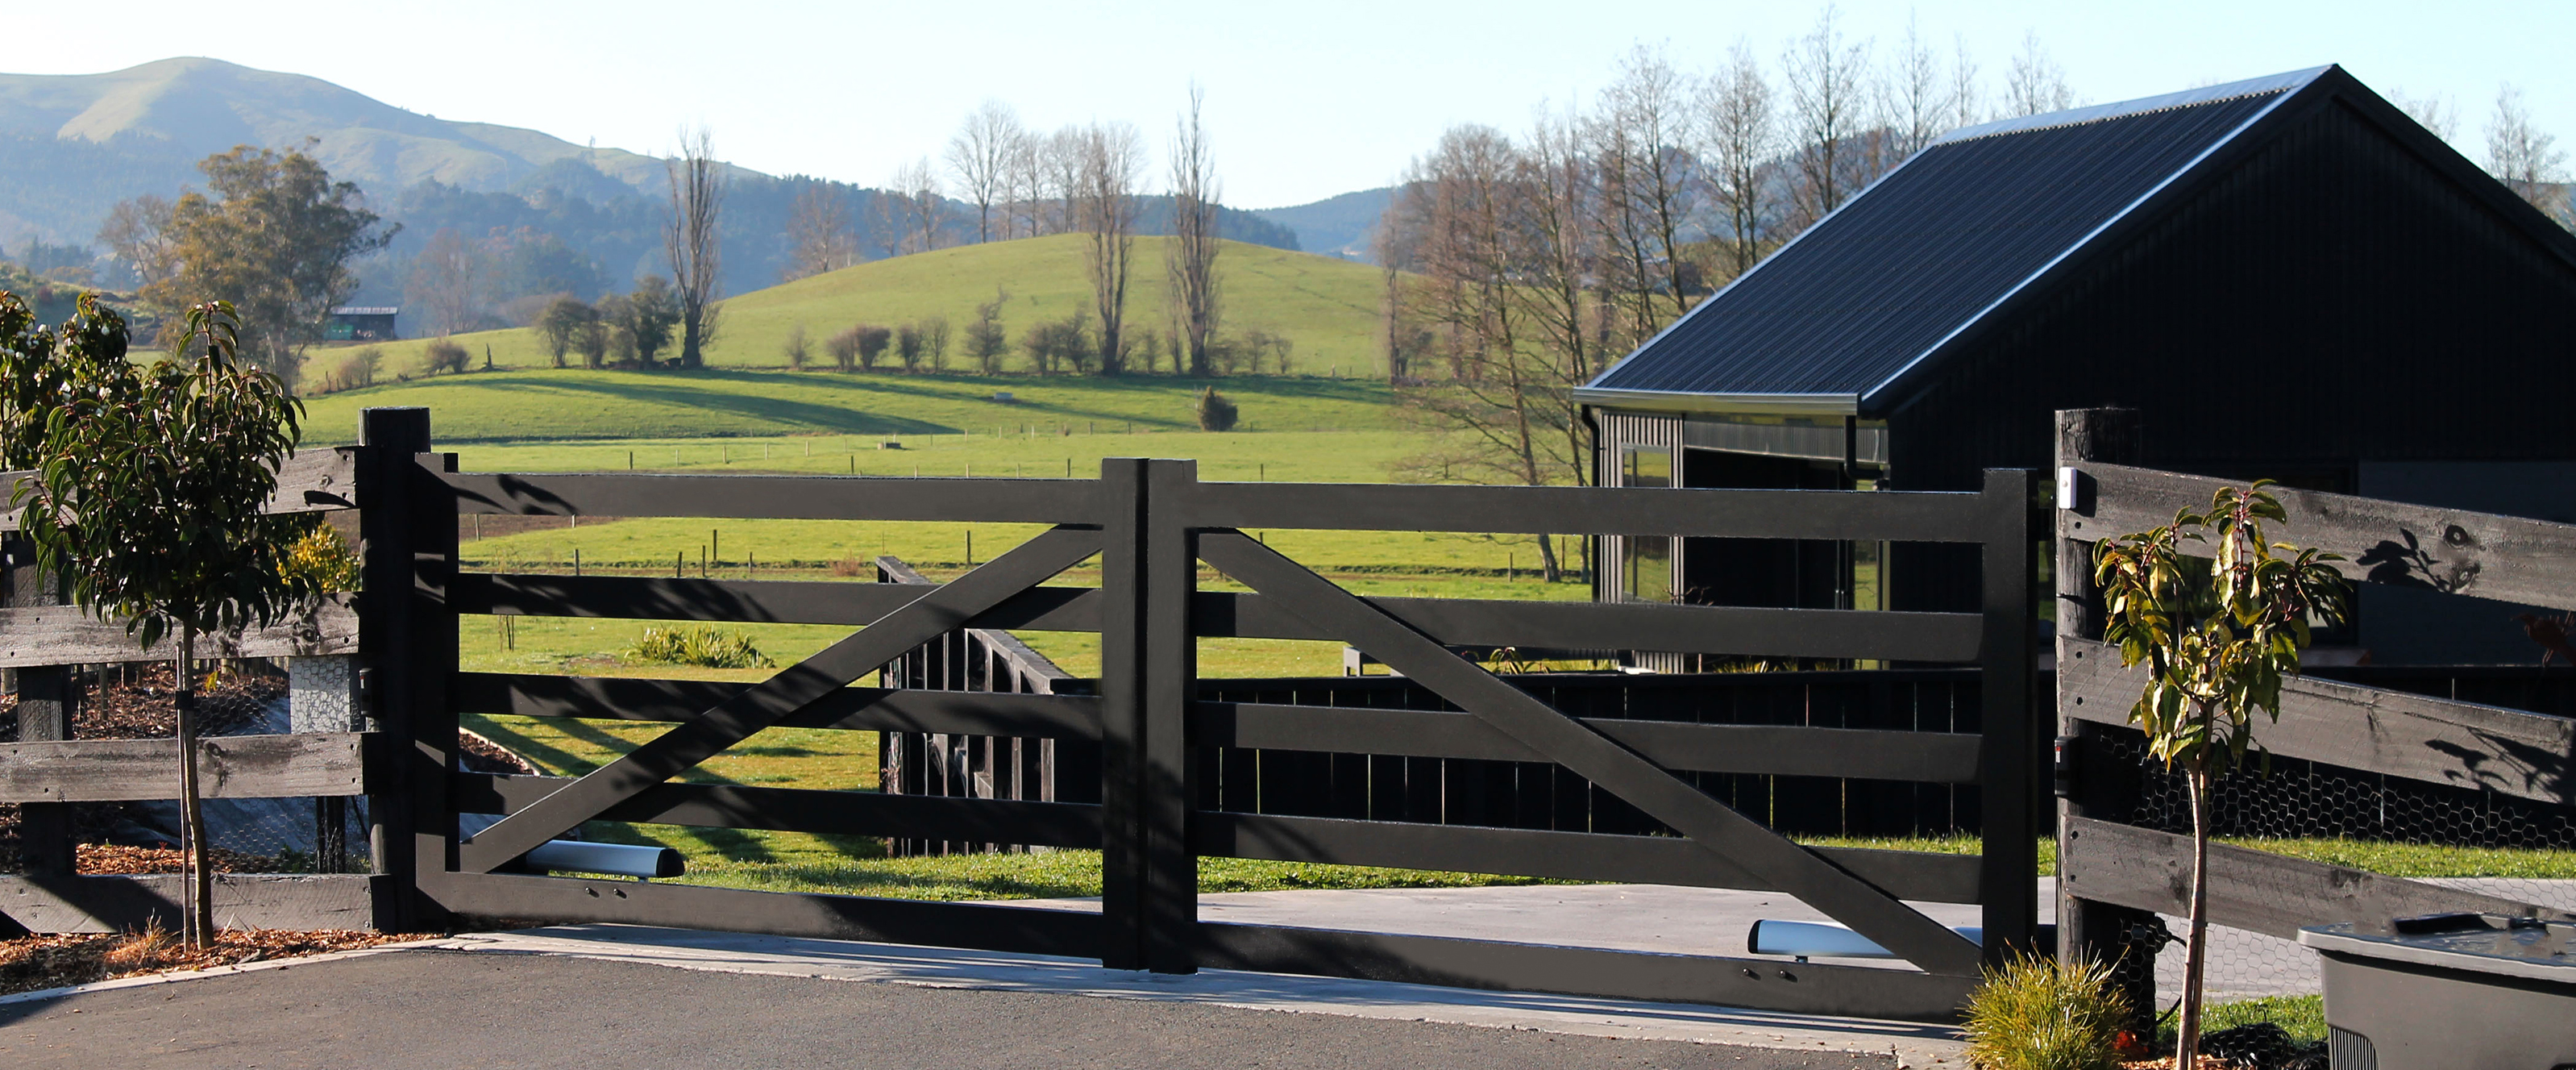 Ashland Country Gate - Lifestyle Image